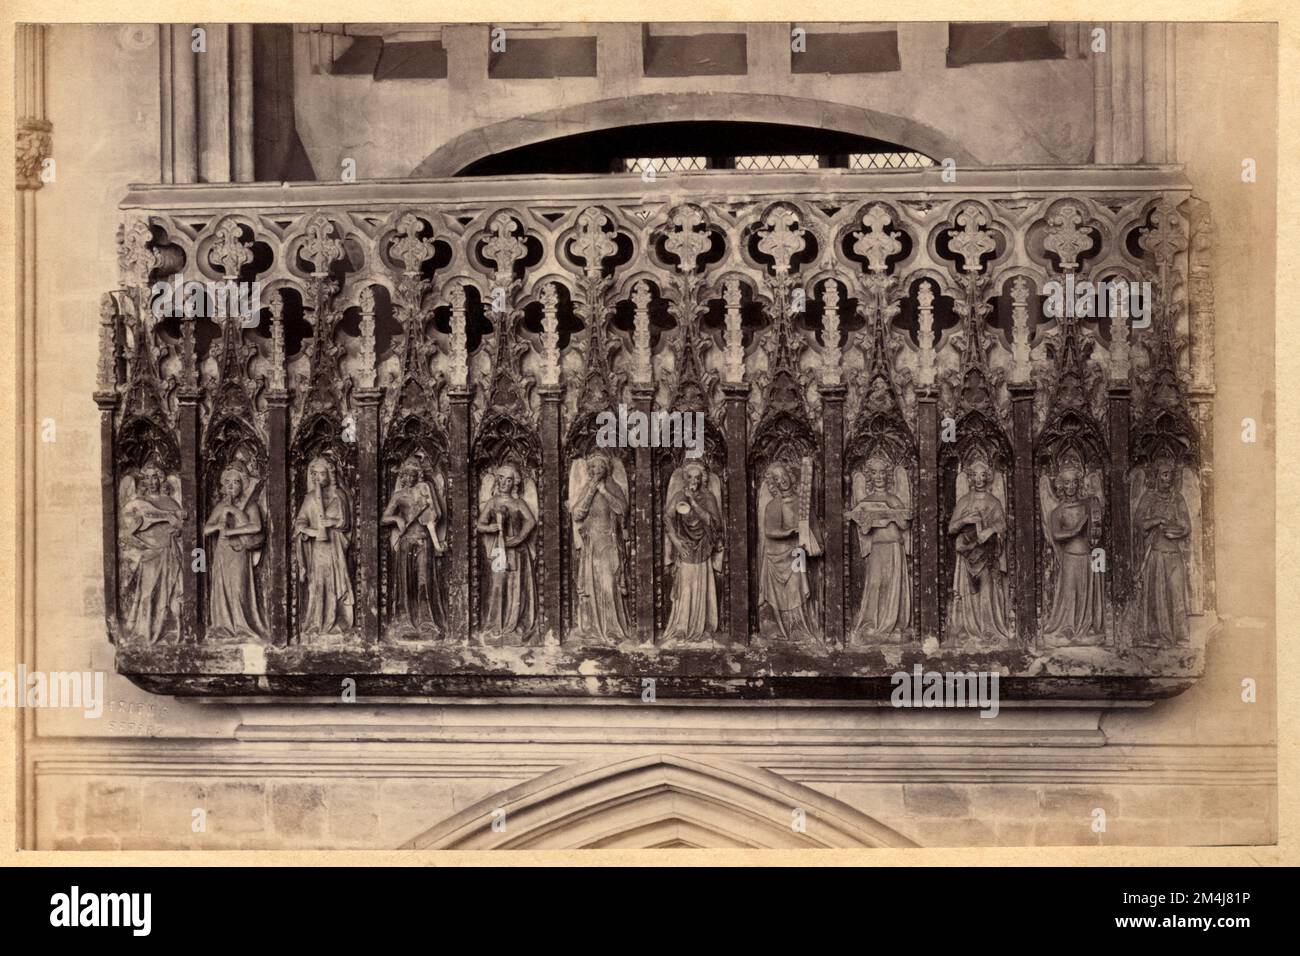 1860 CA , DEVON , ANGLETERRE , GRANDE-BRETAGNE : EXETER . La CATHÉDRALE , fondée en 1050 , la Galerie des Minstrels ( 1360 ), décorée de douze anges sculptés, dont douze jouent des instruments de musique médiévaux . Photo de Francis Friths ( 1822 - 1898 ) . - GRAND BRETAGNA - VUE - FOTO STORICHE - HISTOIRE - GEOGRAFIA - GÉOGRAPHIE - ARCHITETURA - ARCHITECTURE - STILE GOTICO - STYLE GOTHIQUE - CATTEDRALE - EGLISE - CHIESA - OTTOCENTO - 800 - RELIGIONE - RELIGION - ART - ARTE - SCULPTURA - SCULPTURE - ANGELI Musicanti --- Archivio GBB Banque D'Images